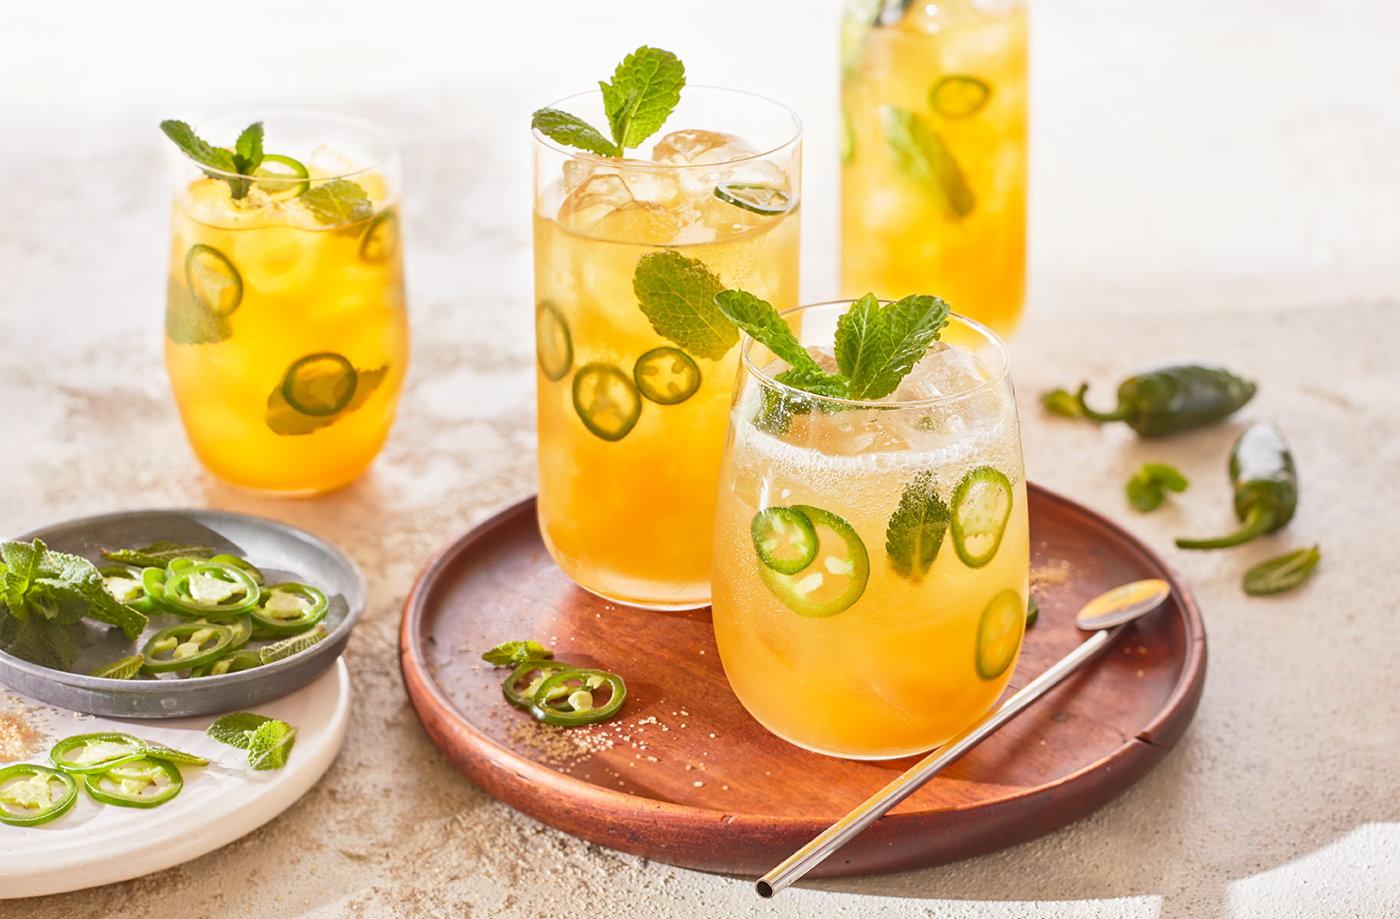 Mango Mojito Recipe: The perfect cocktail for summer, simply make a spicy mango mojito